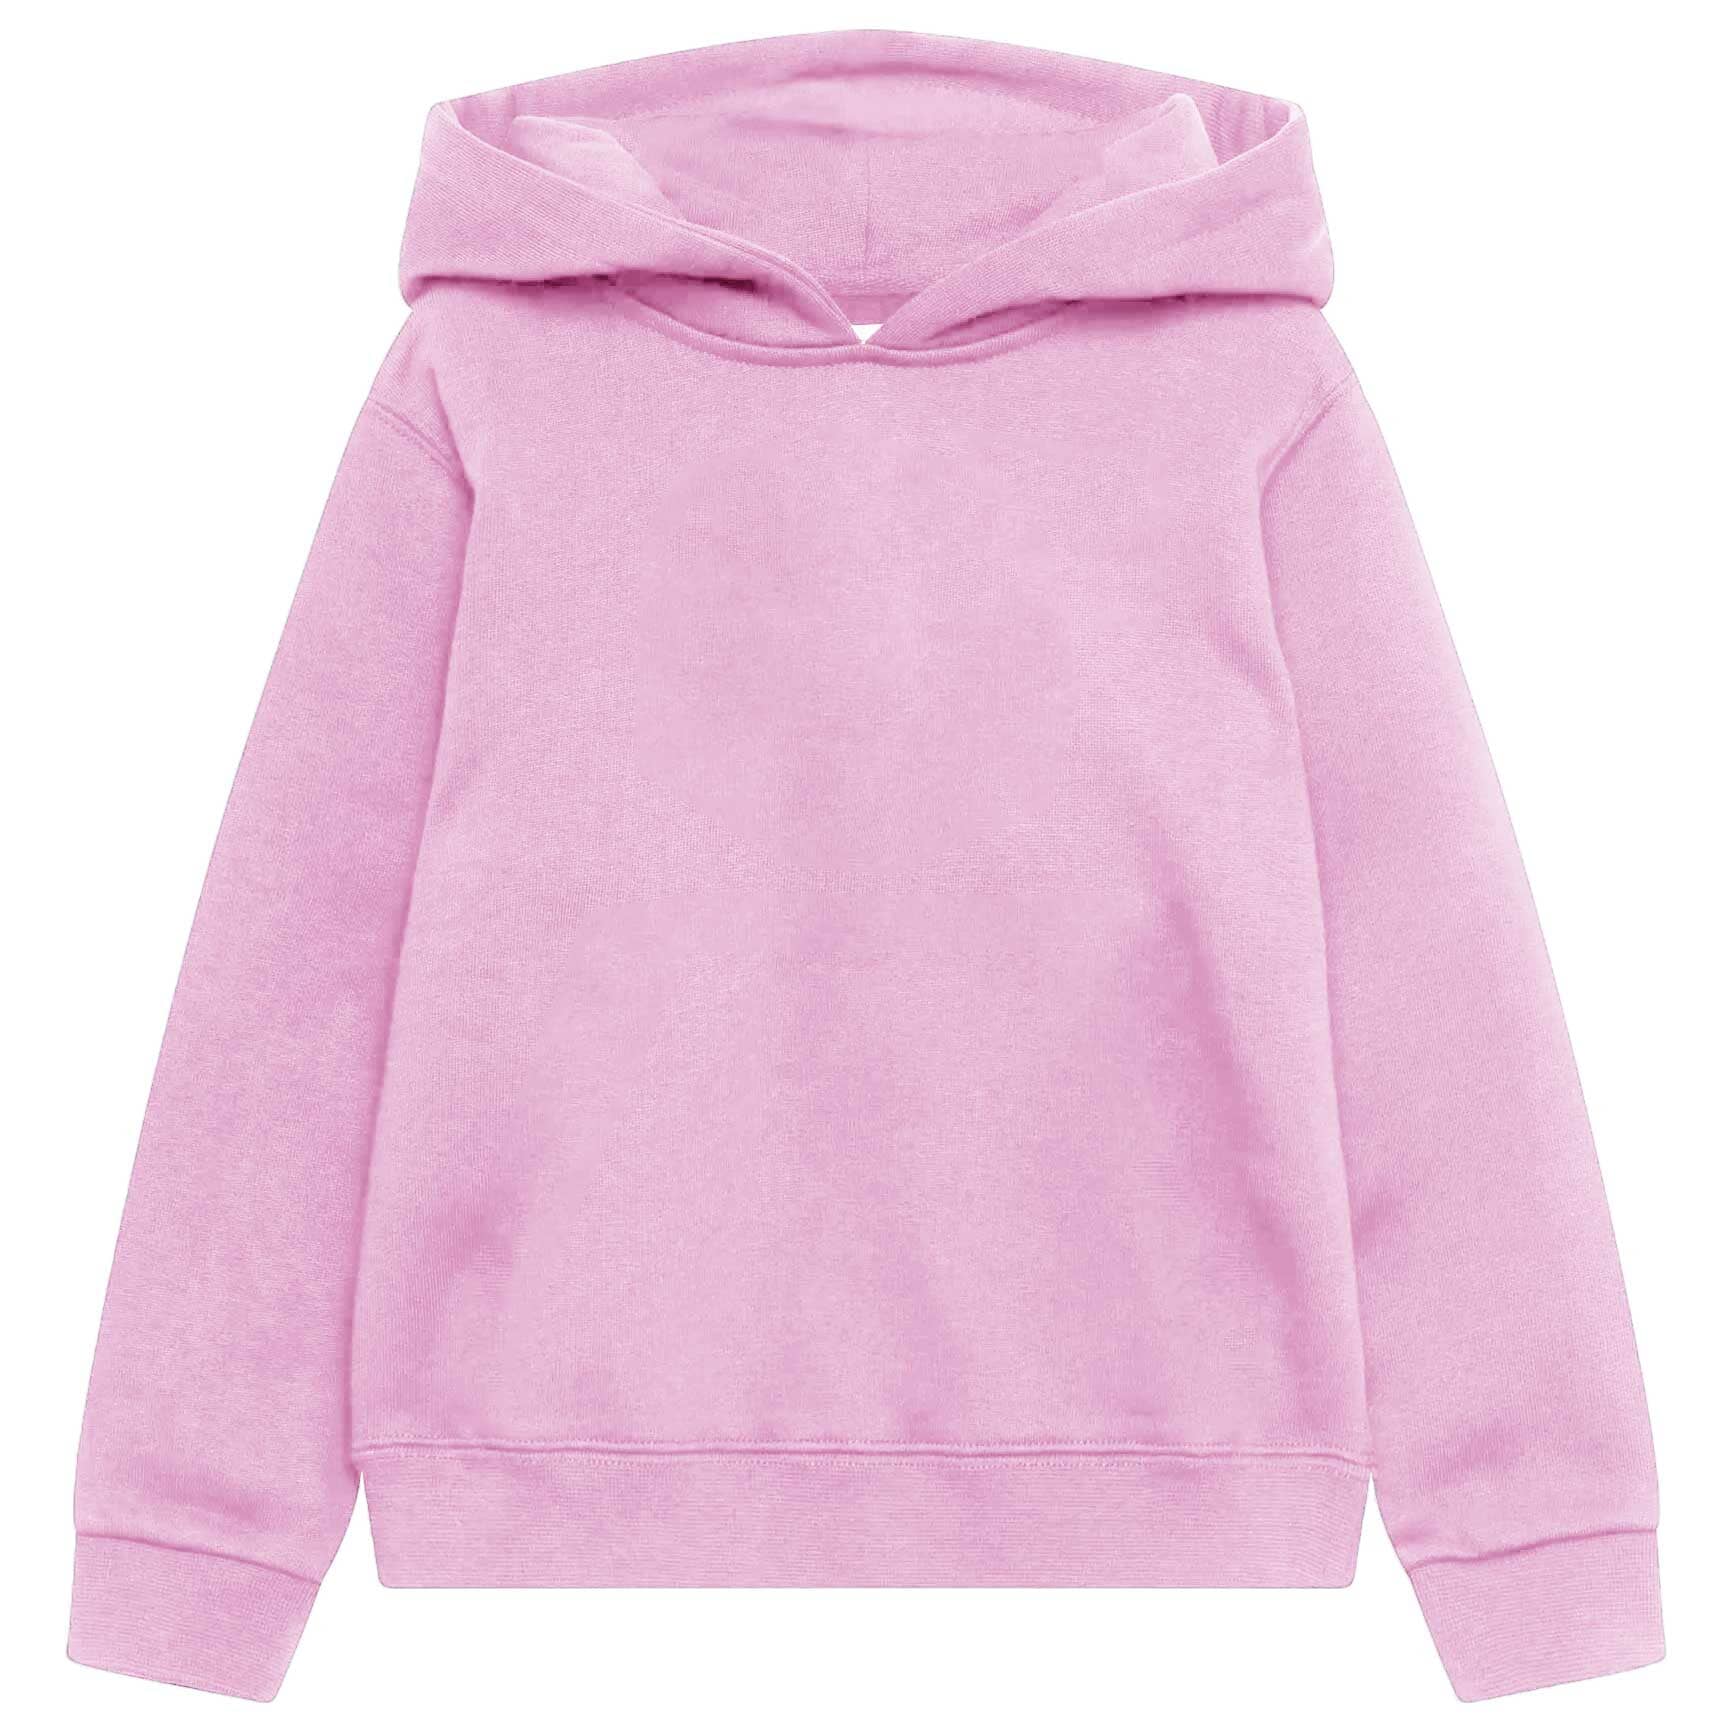 Rabbit Skins Kid's Solid Design Fleece Pullover Hoodie Boy's Pullover Hoodie Minhas Garments Lilac 2 Years 